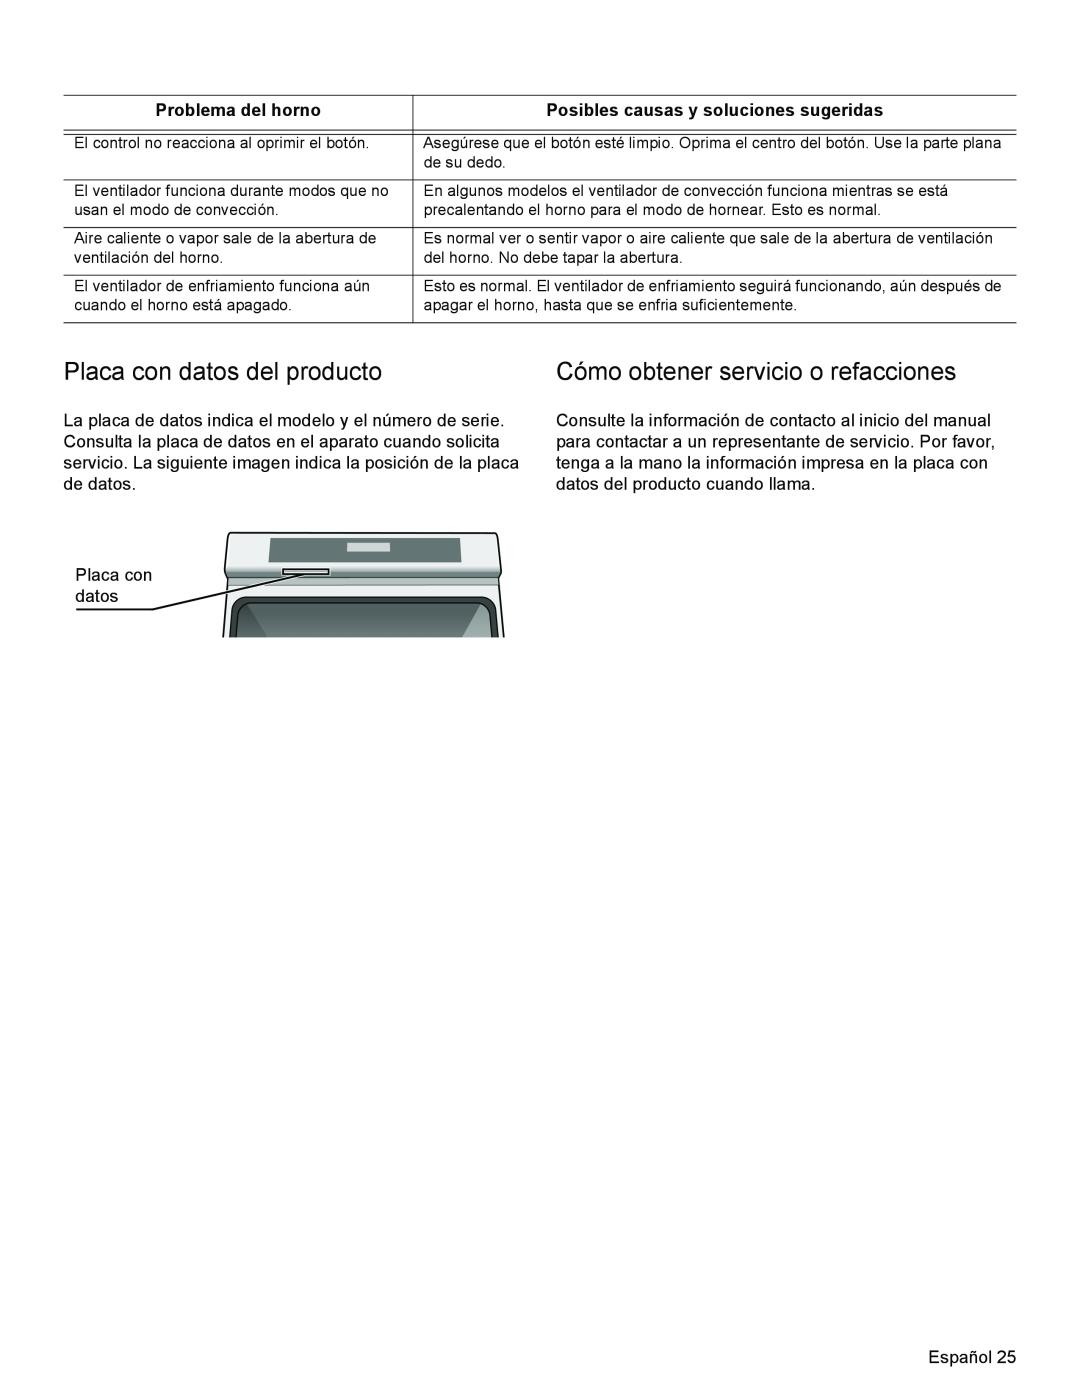 Thermador PODM301, PODMW301 manual Placa con datos del producto, Cómo obtener servicio o refacciones, Problema del horno 